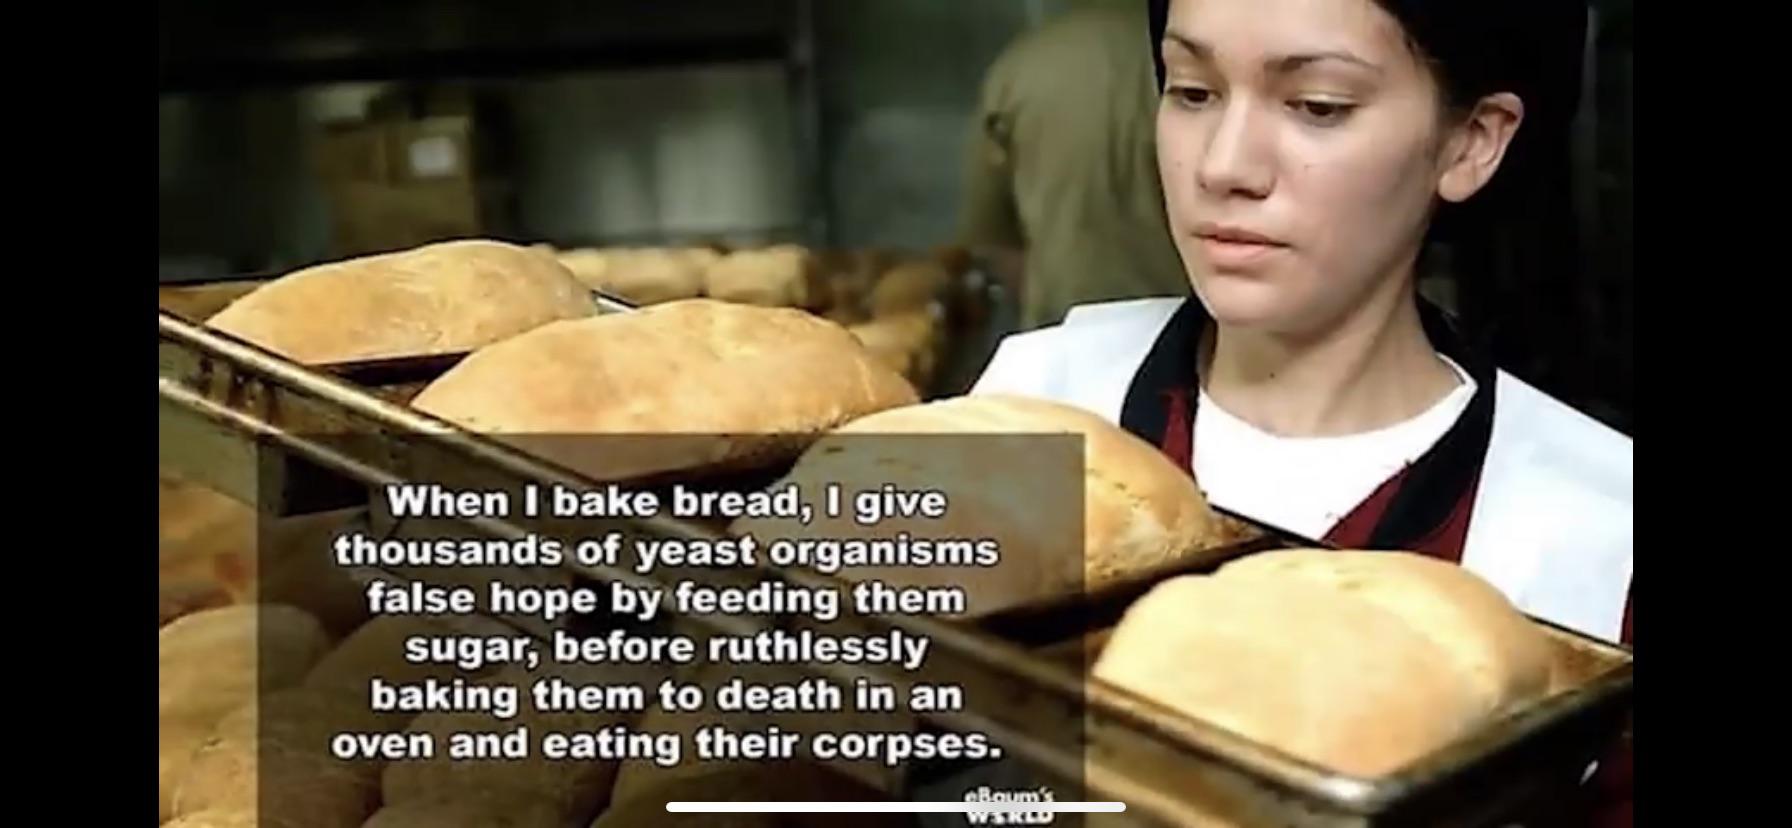 Brutal bread baking.